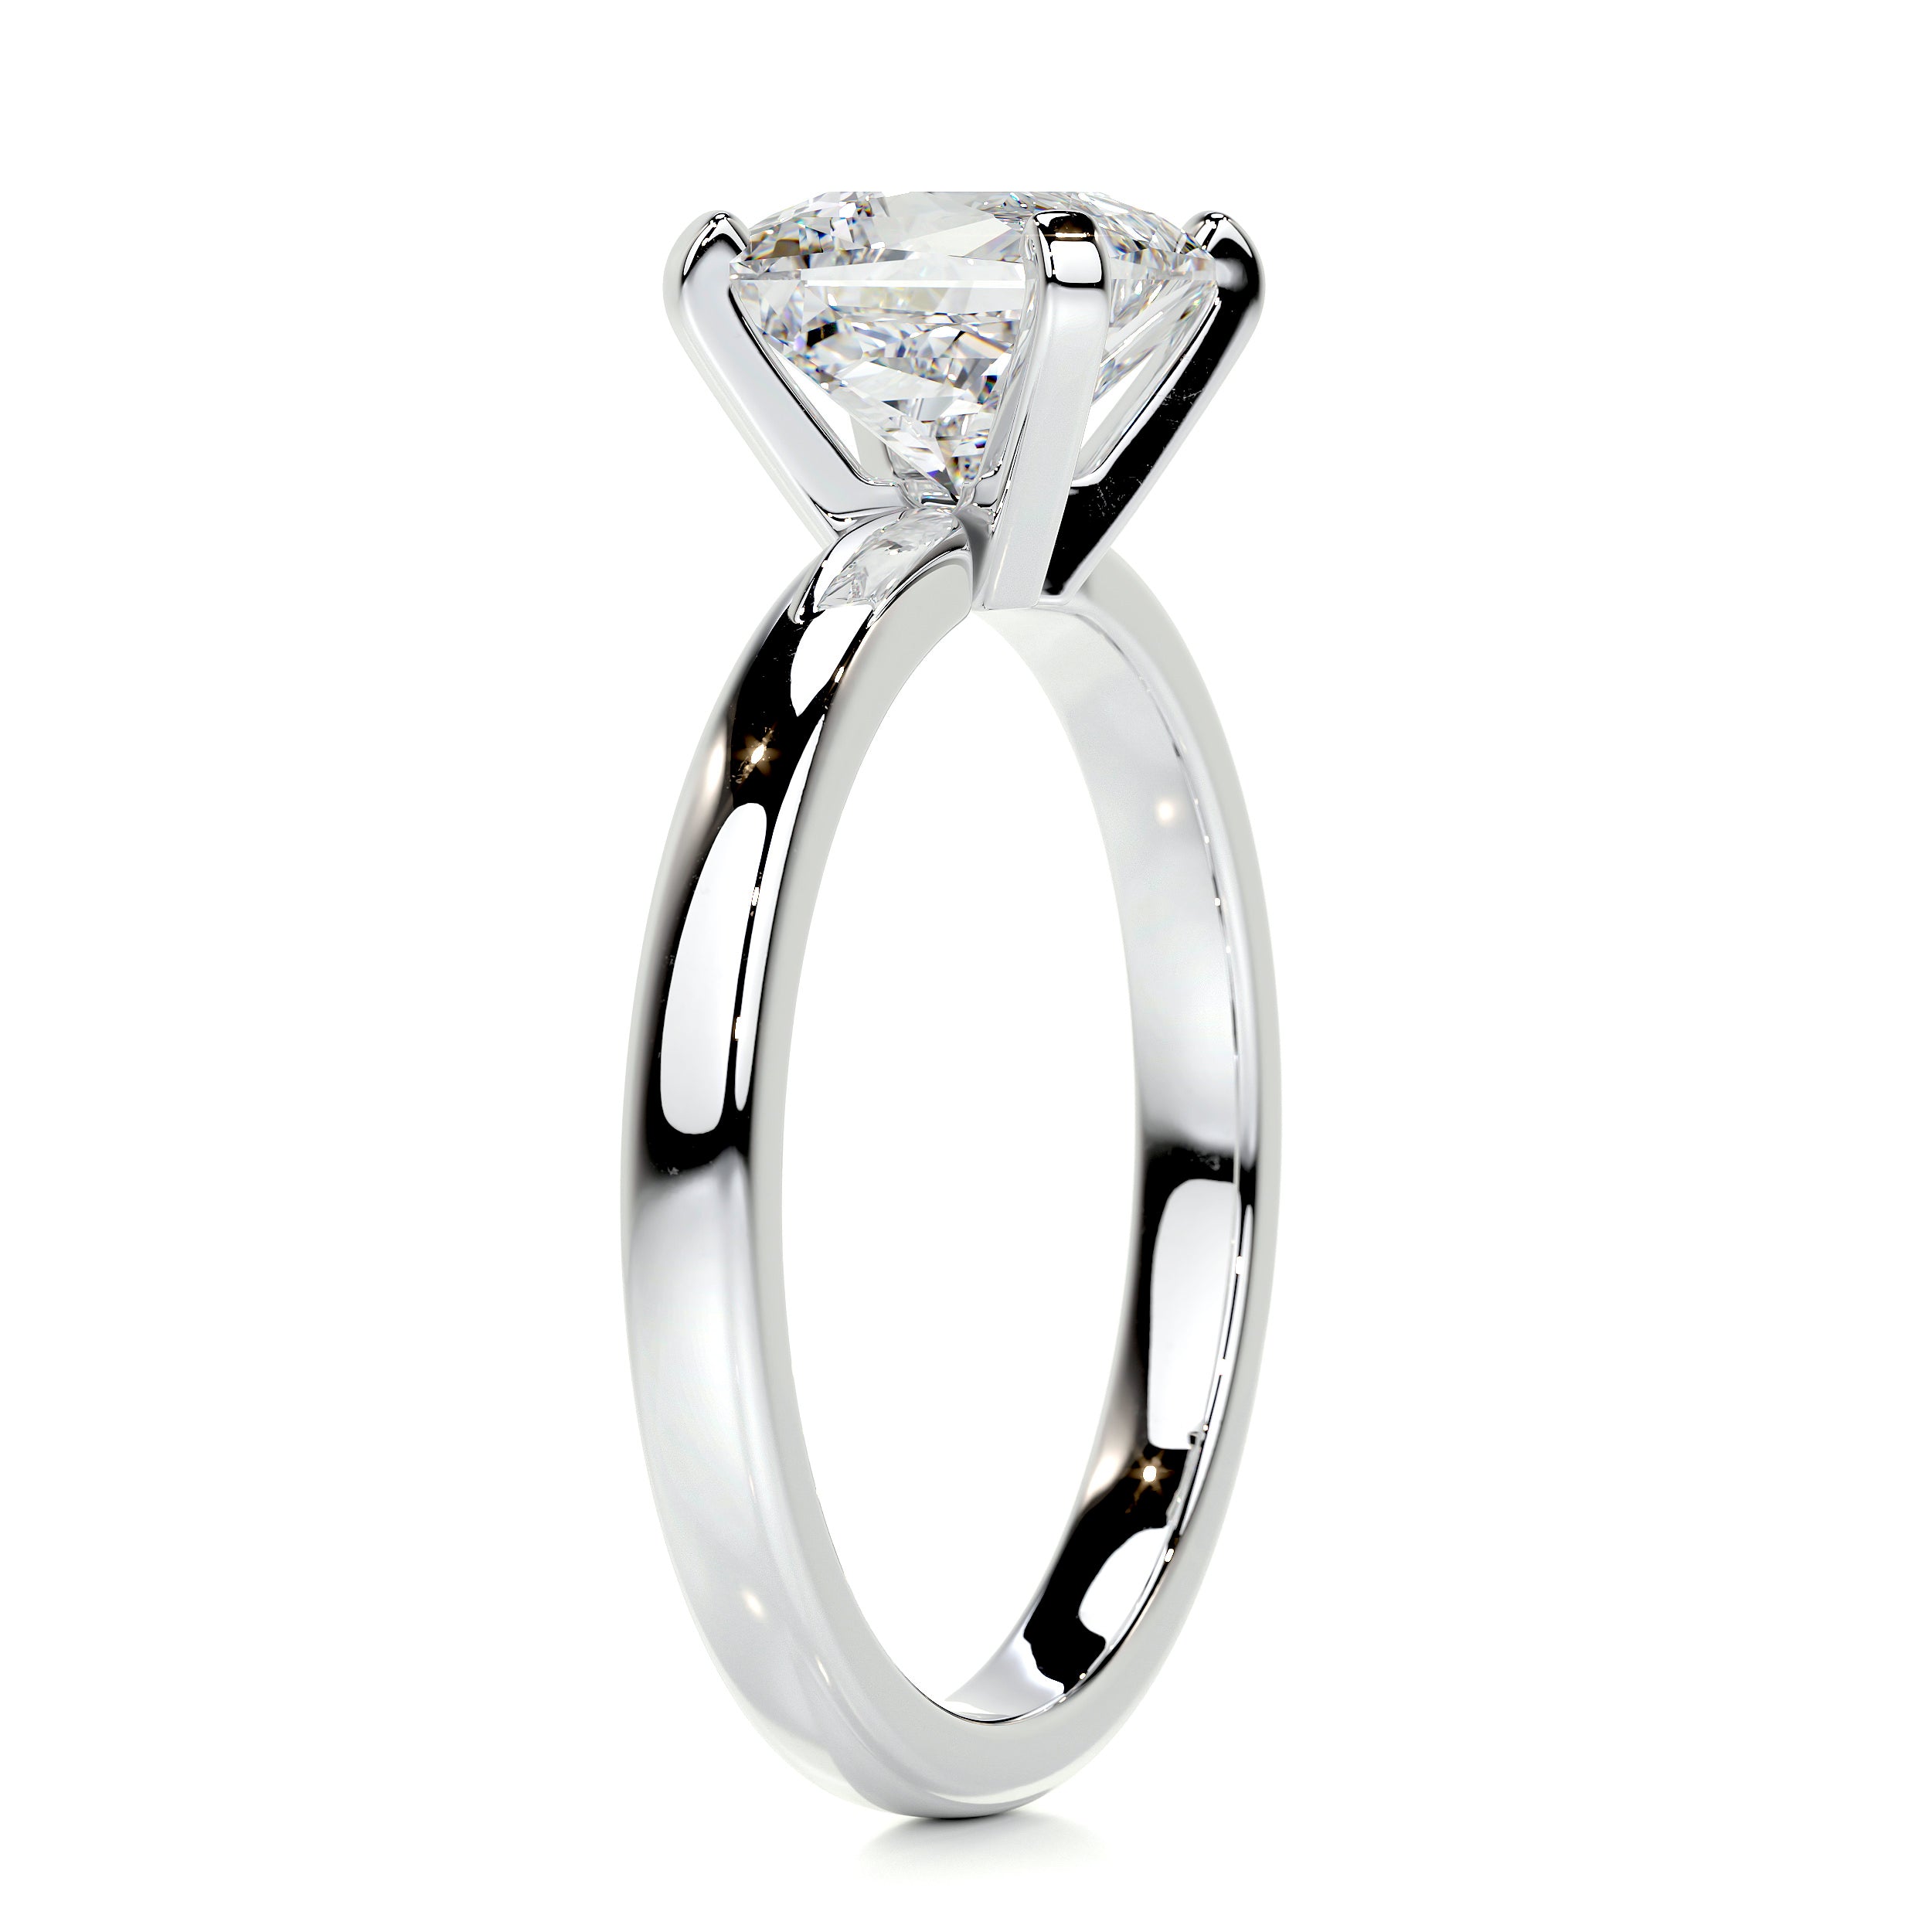 Isabelle Diamond Engagement Ring -18K White Gold